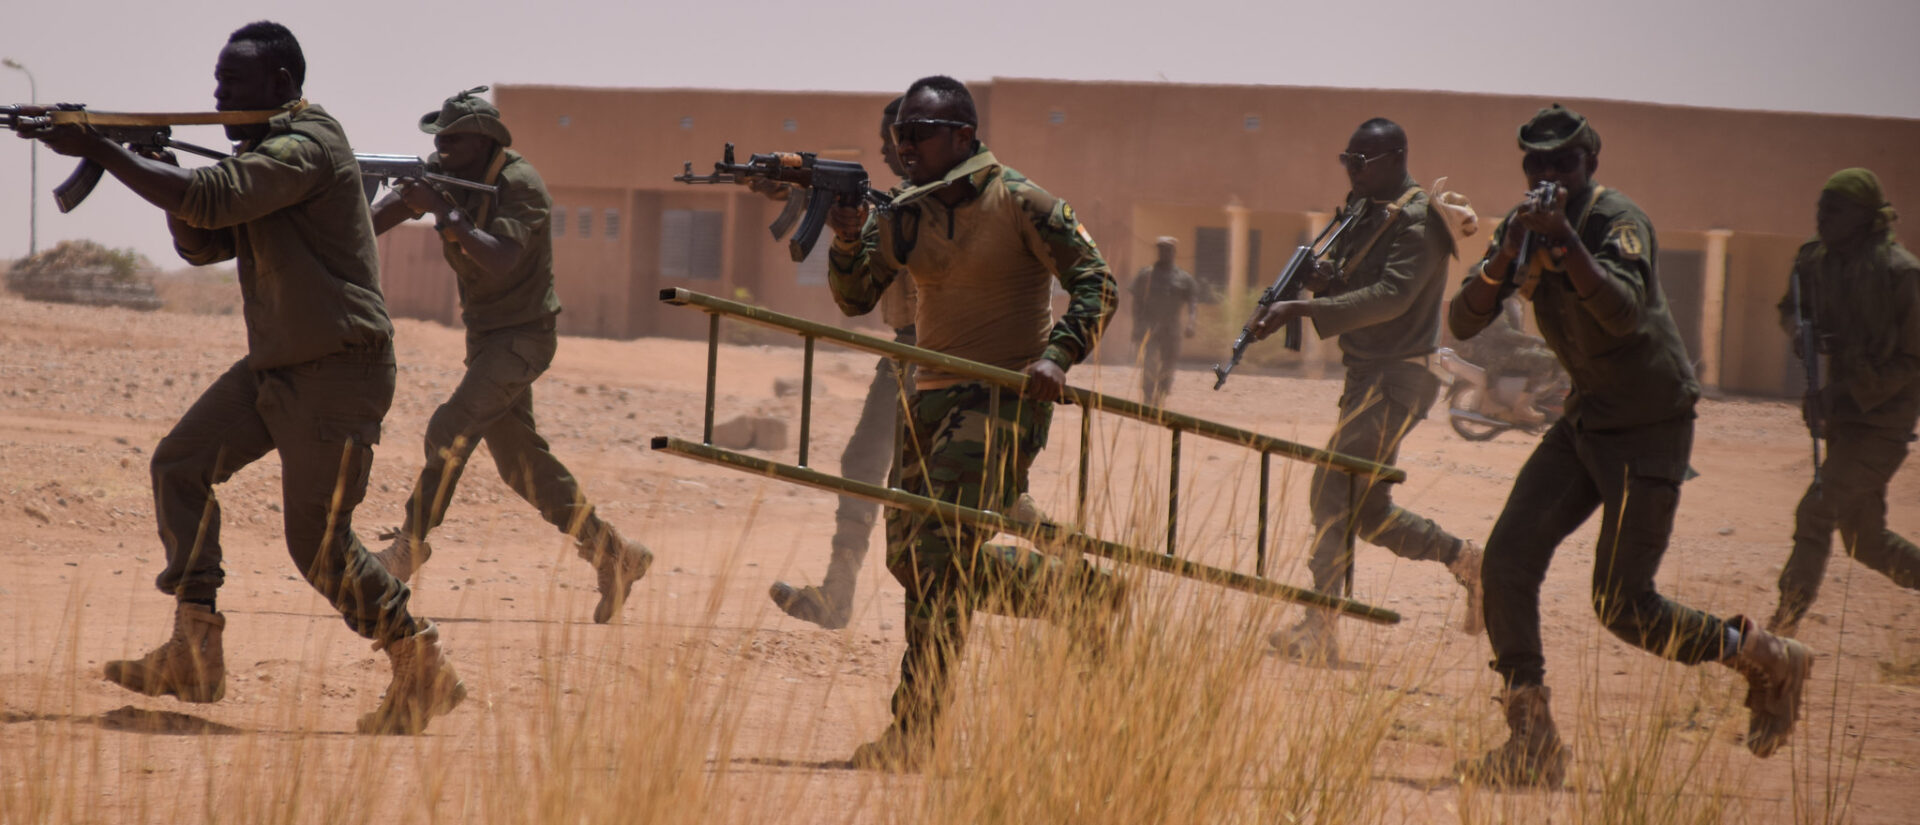 Le gouvernement tchadien assure avoir déployé des troupes de sécurité à sa frontière pour neutraliser les bandes armées | photo d'illustration © US Africa Command/Flickr/CC BY 2.0